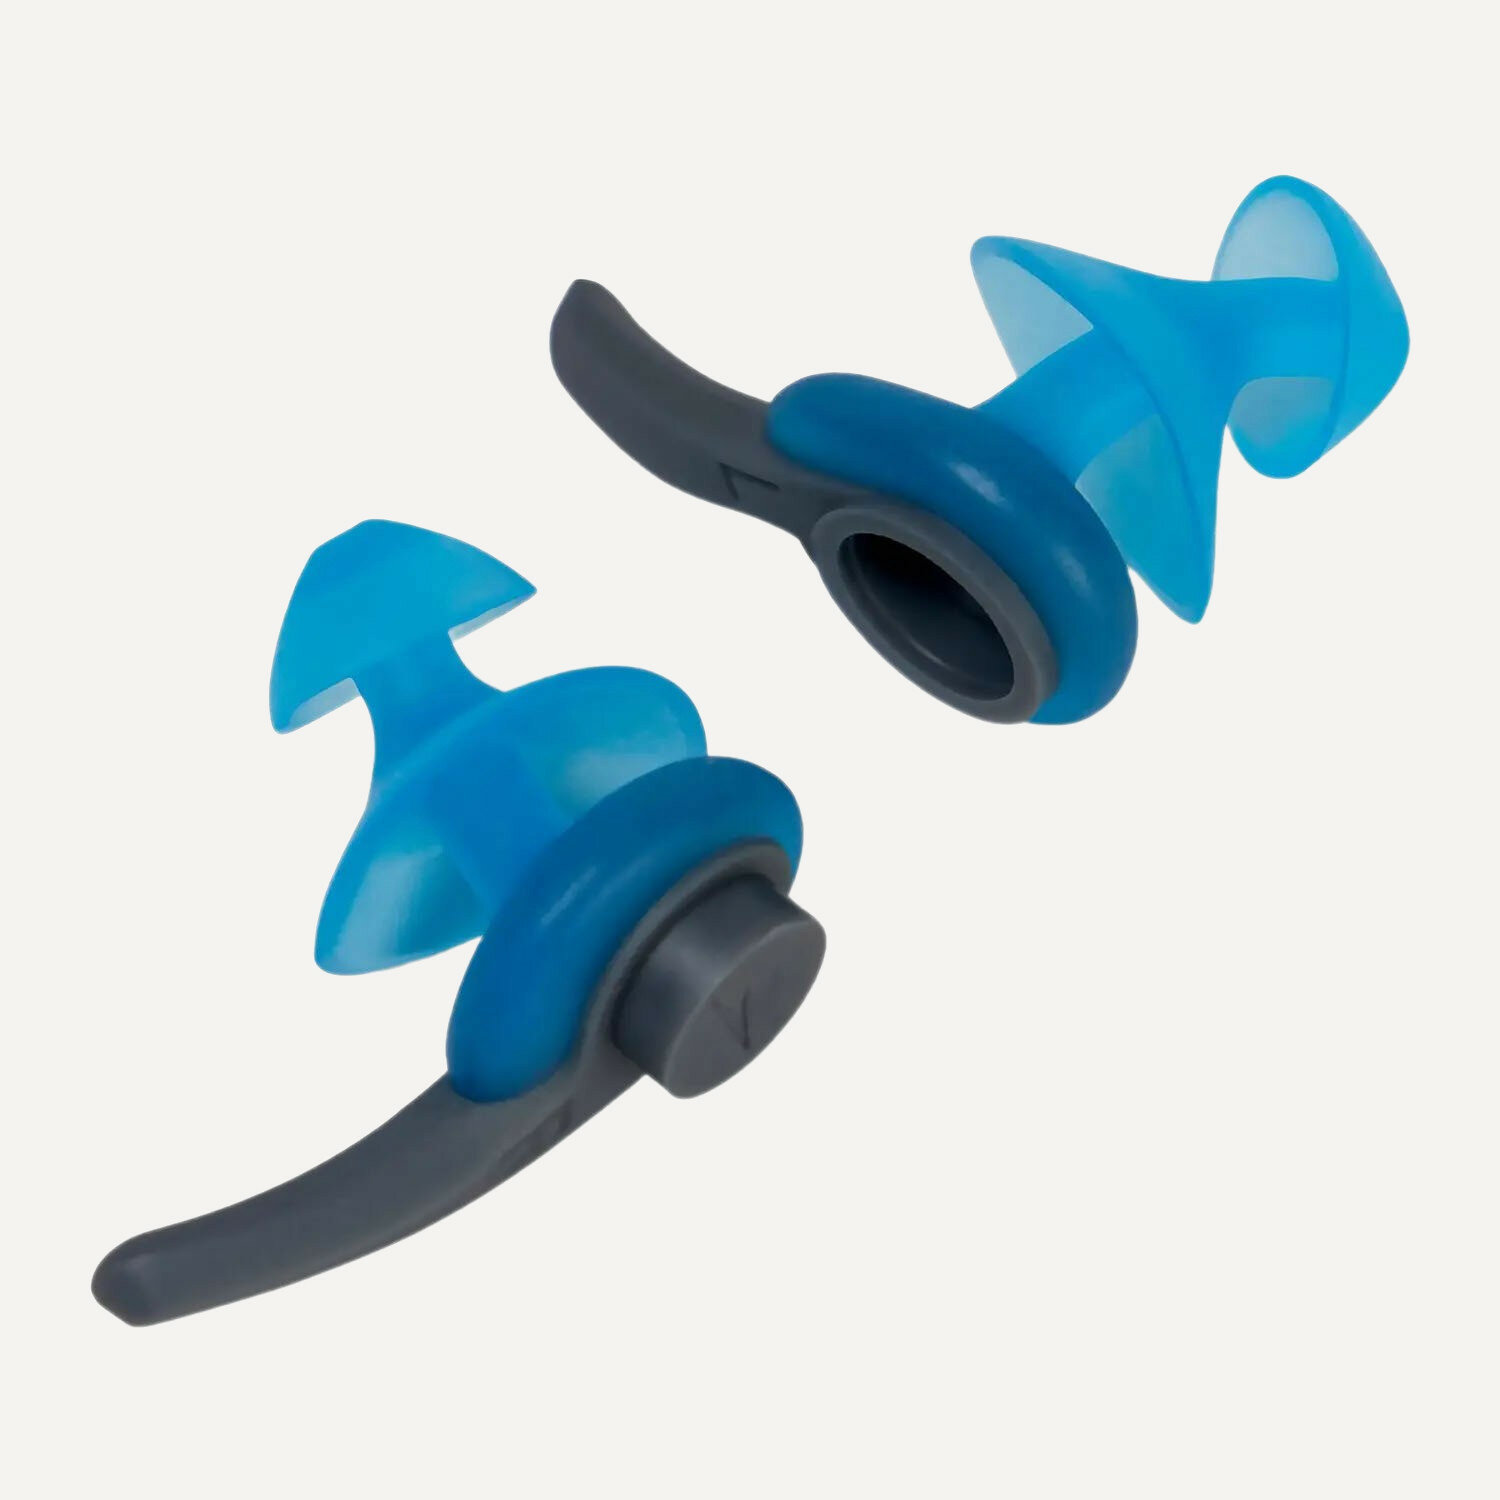 Беруши для плавания Speedo Беруши/Biofuse Earplug Biofuse Earplug, blue/grey .